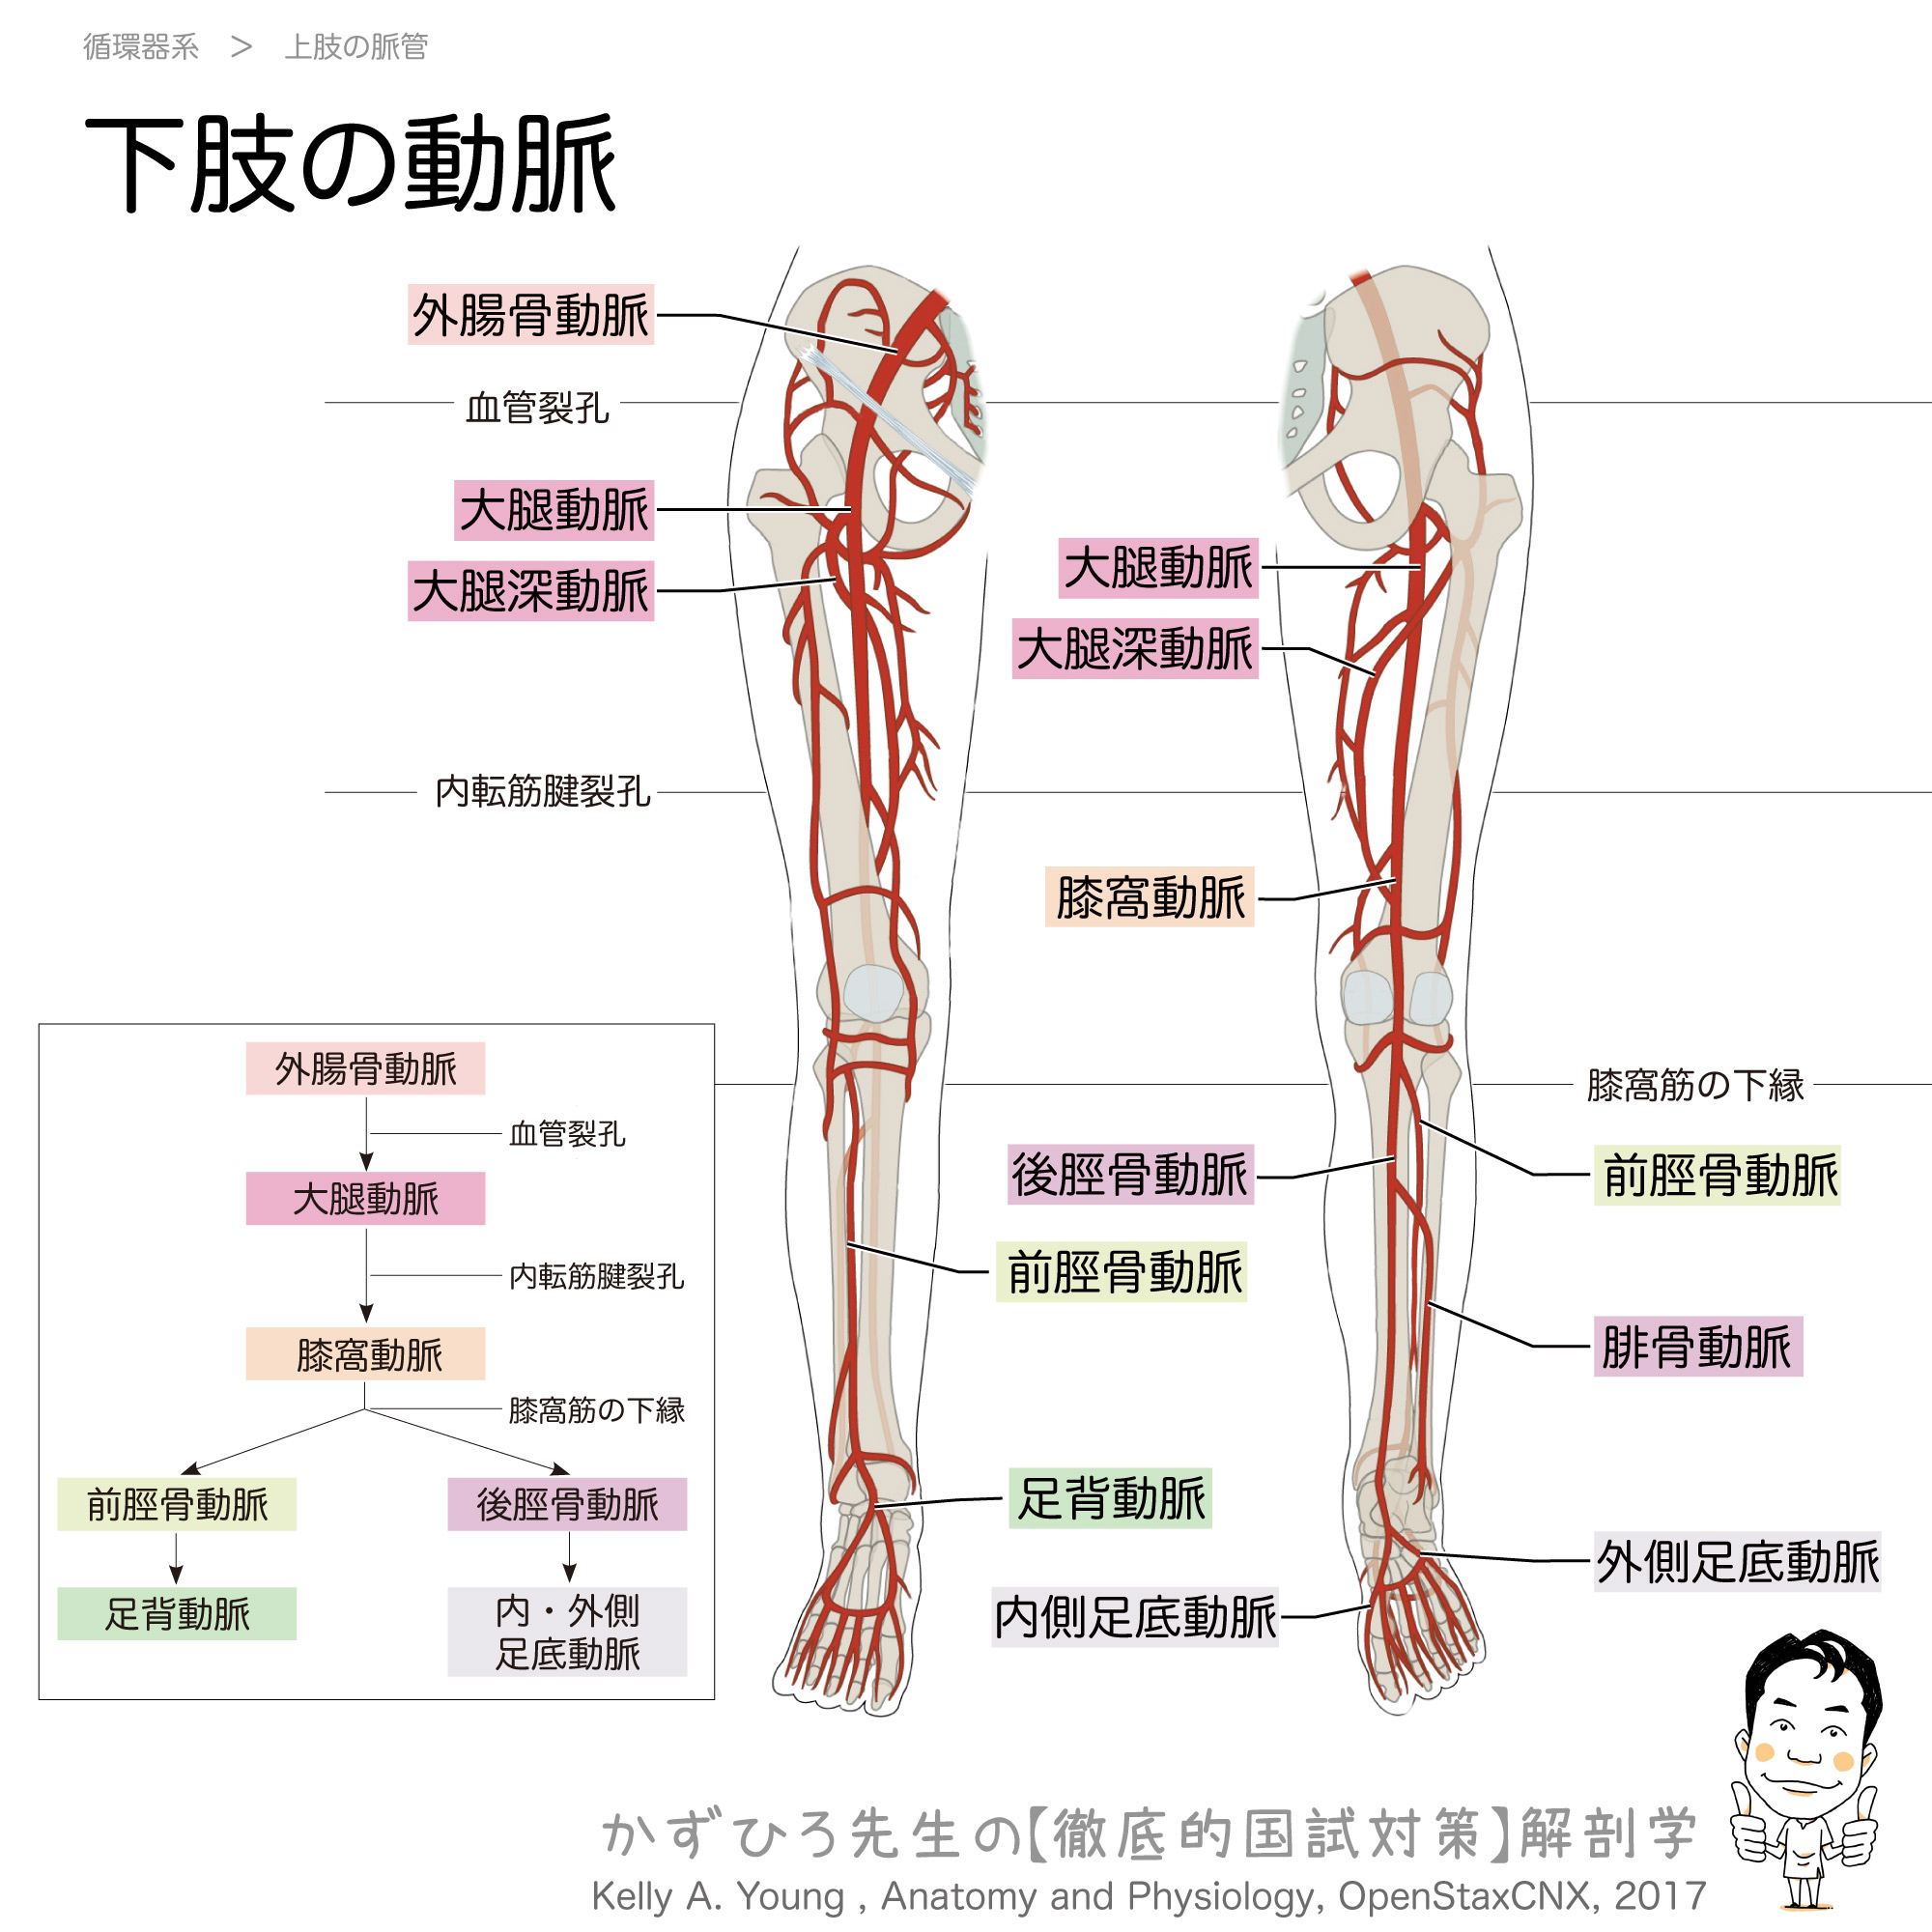 下肢の動脈 チャート 徹底的解剖学